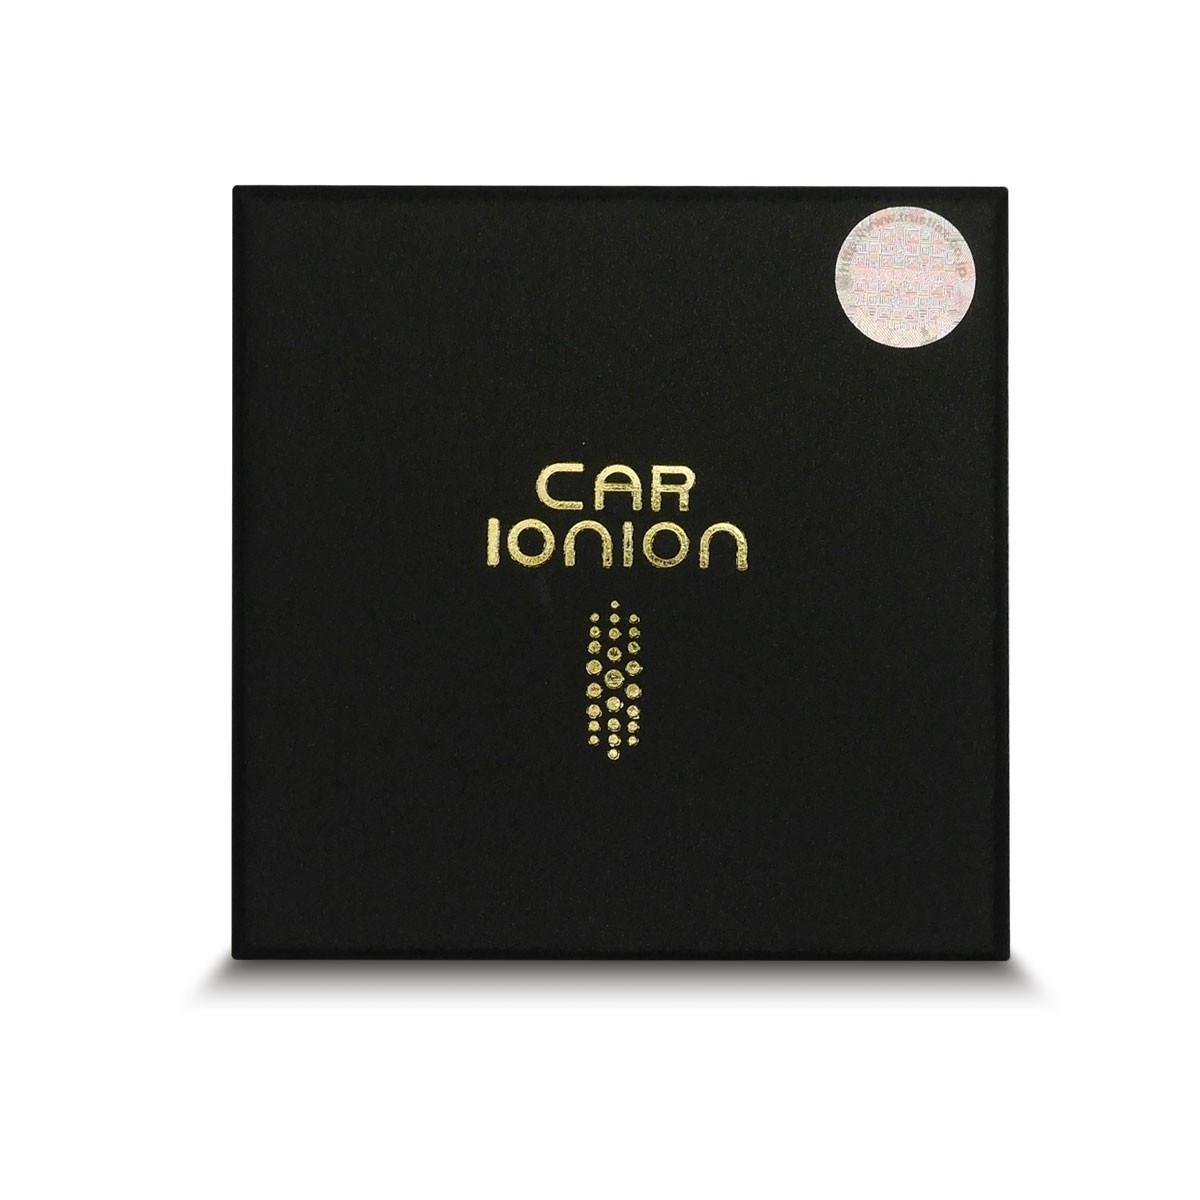 CAR IONION 車載用 超小型 マイナスイオン発生器 オゾンフリー マイナスイオン 110万個 PM2.5 花粉 最強対策 :carionion:和装通販  きものレンタル 西織 - 通販 - Yahoo!ショッピング